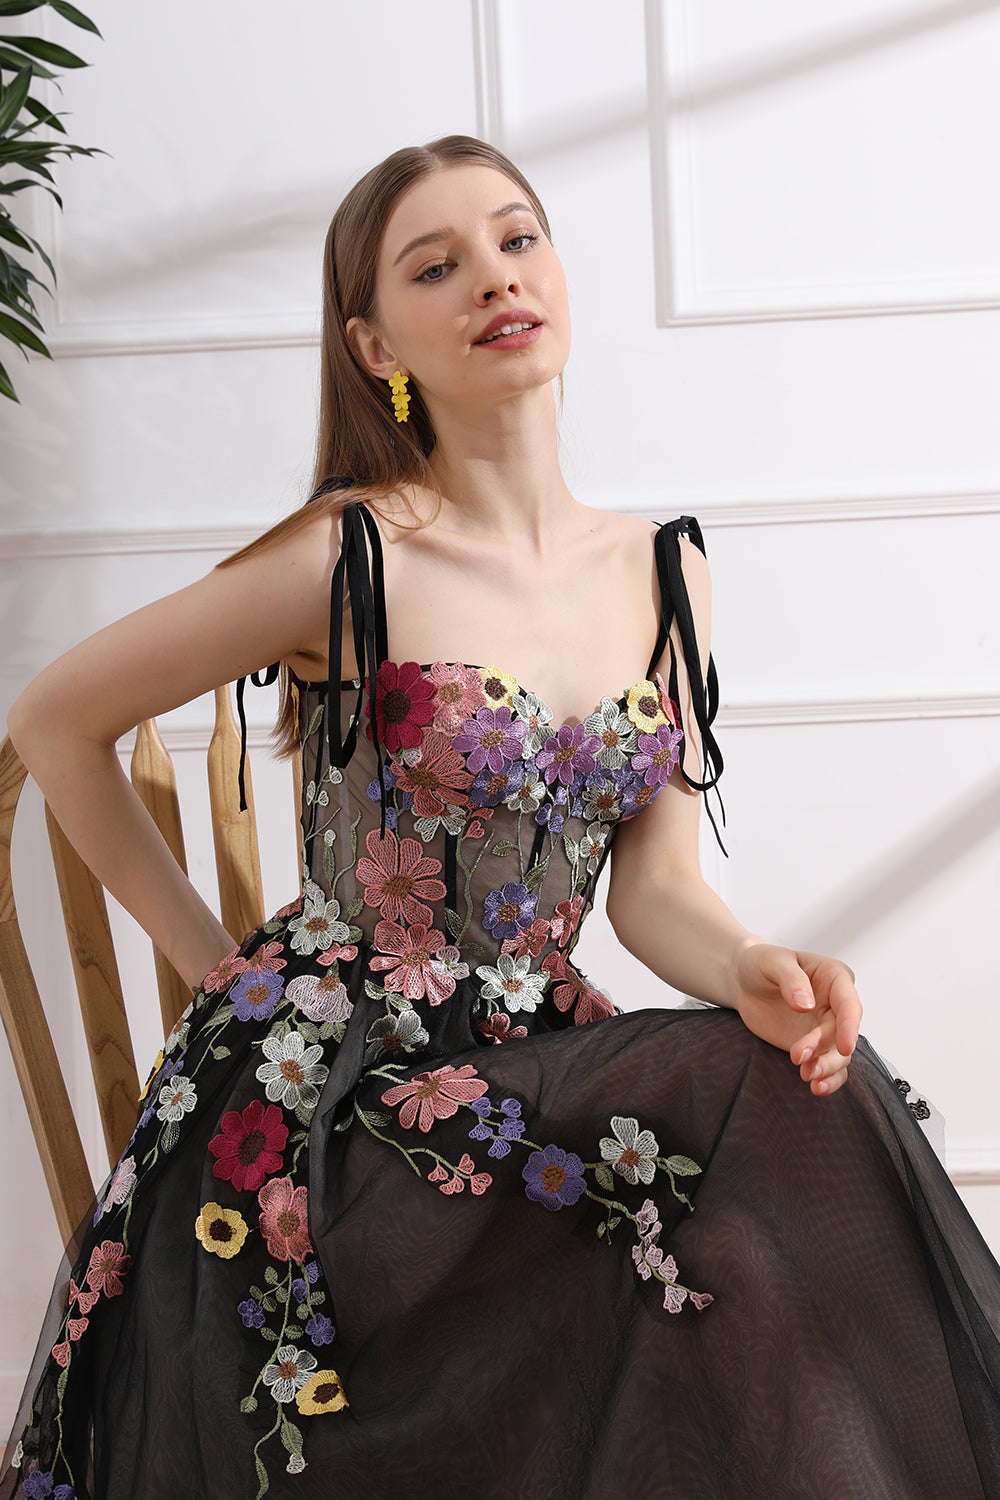 Colorful Applique Floral Corset Black Dress with Tie Straps